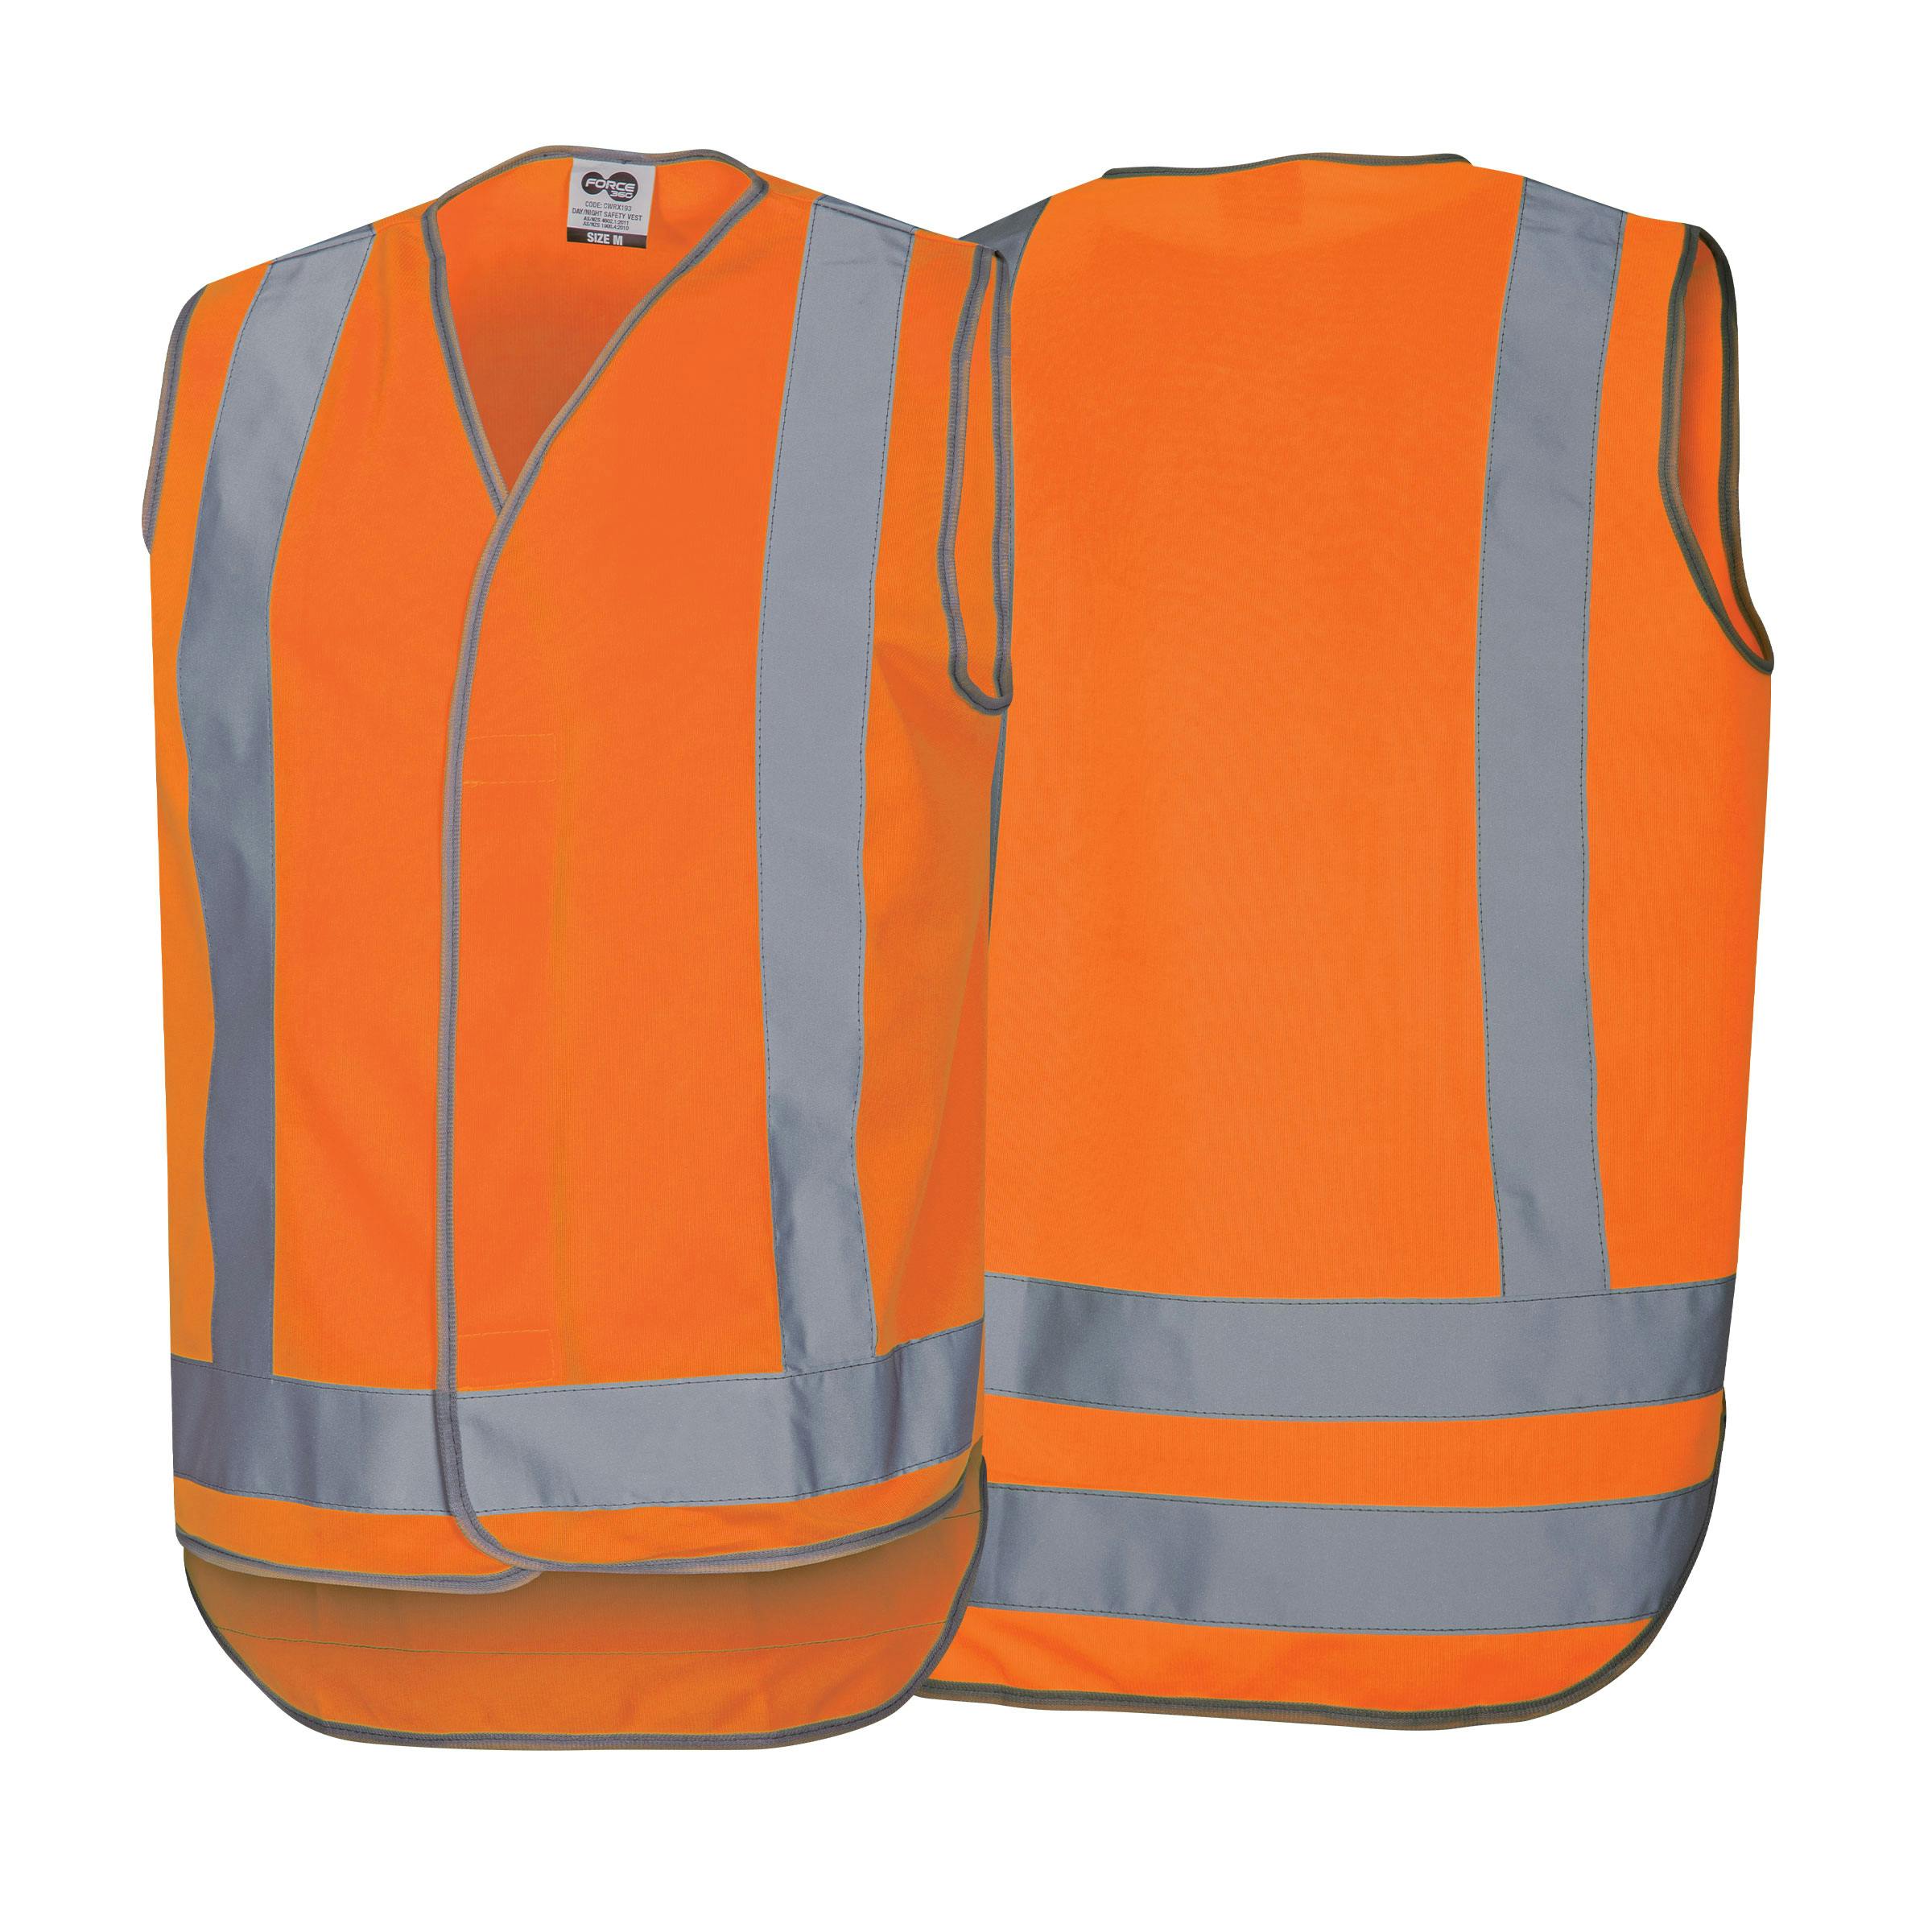 Force360 Orange Day/ Night Safety Vest (Hi-Vis Orange)